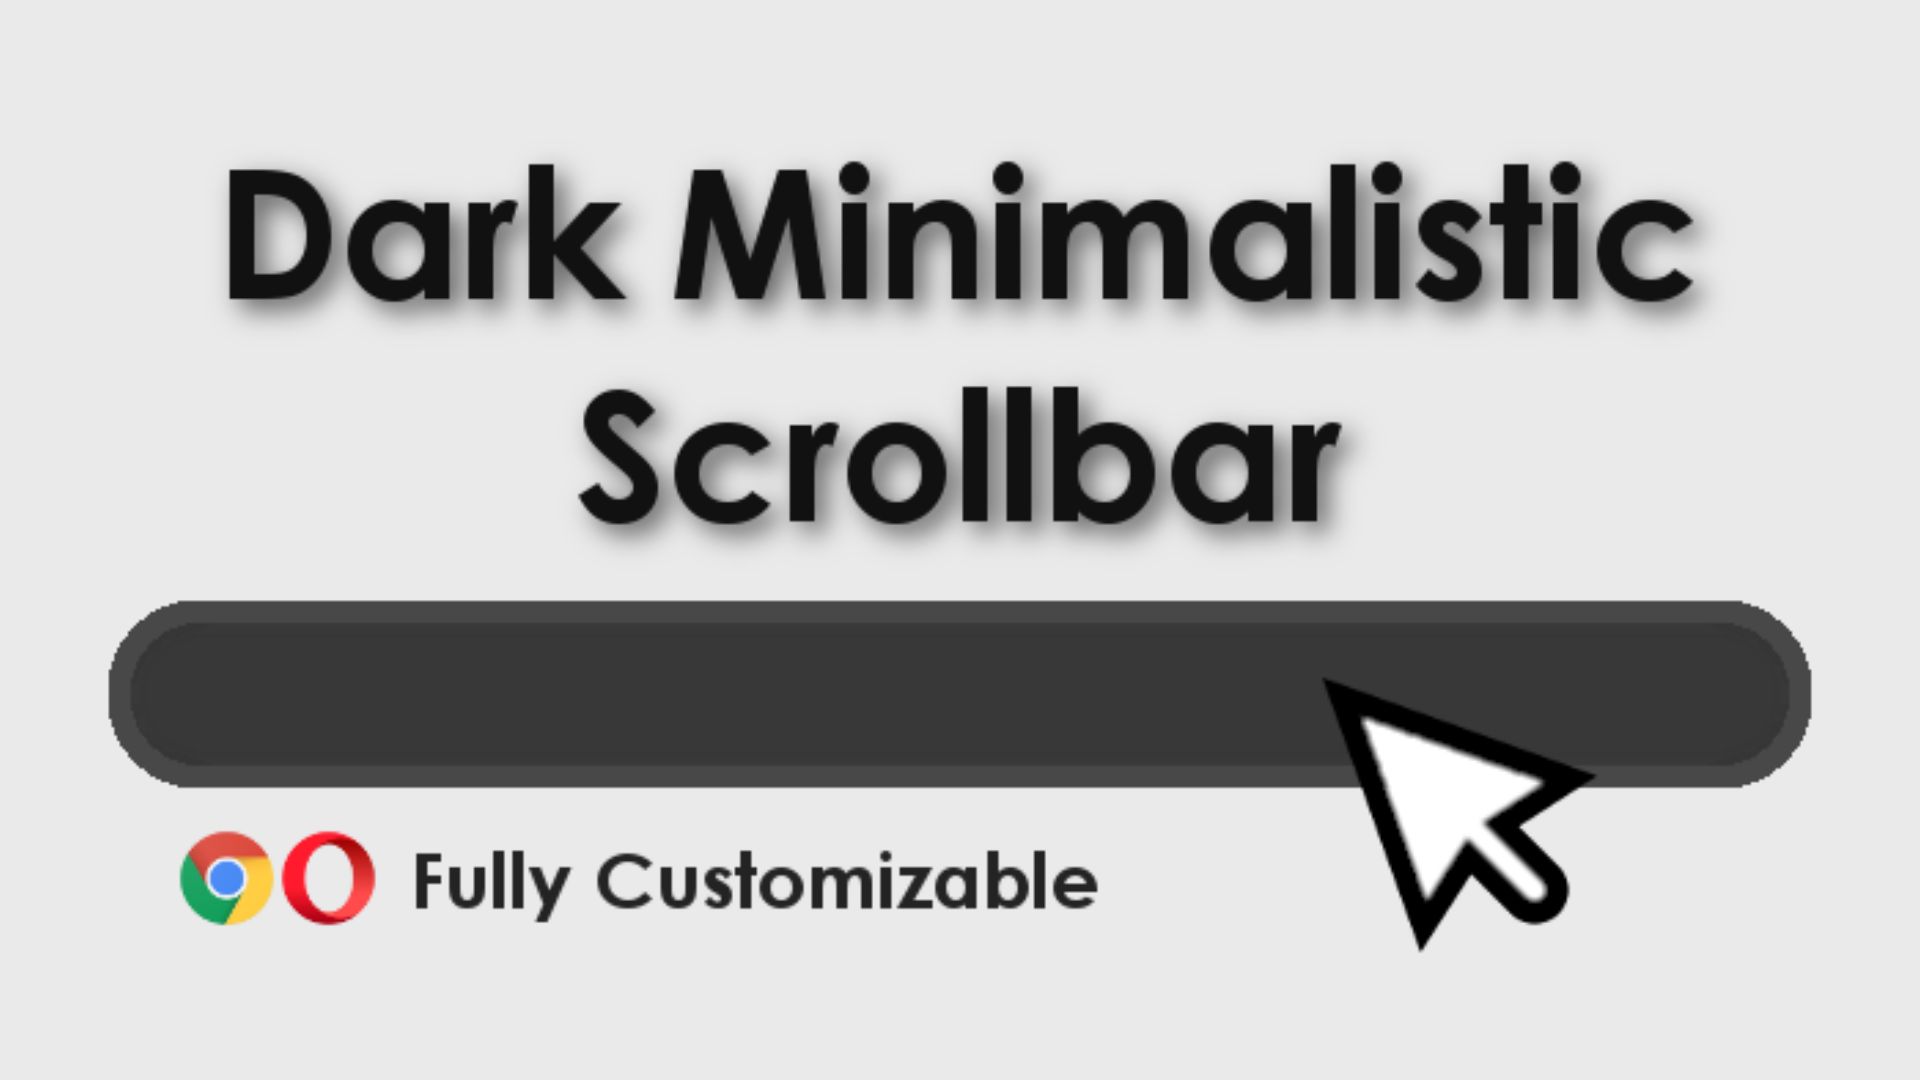 Dark Minimalistic Scrollbar screenshot